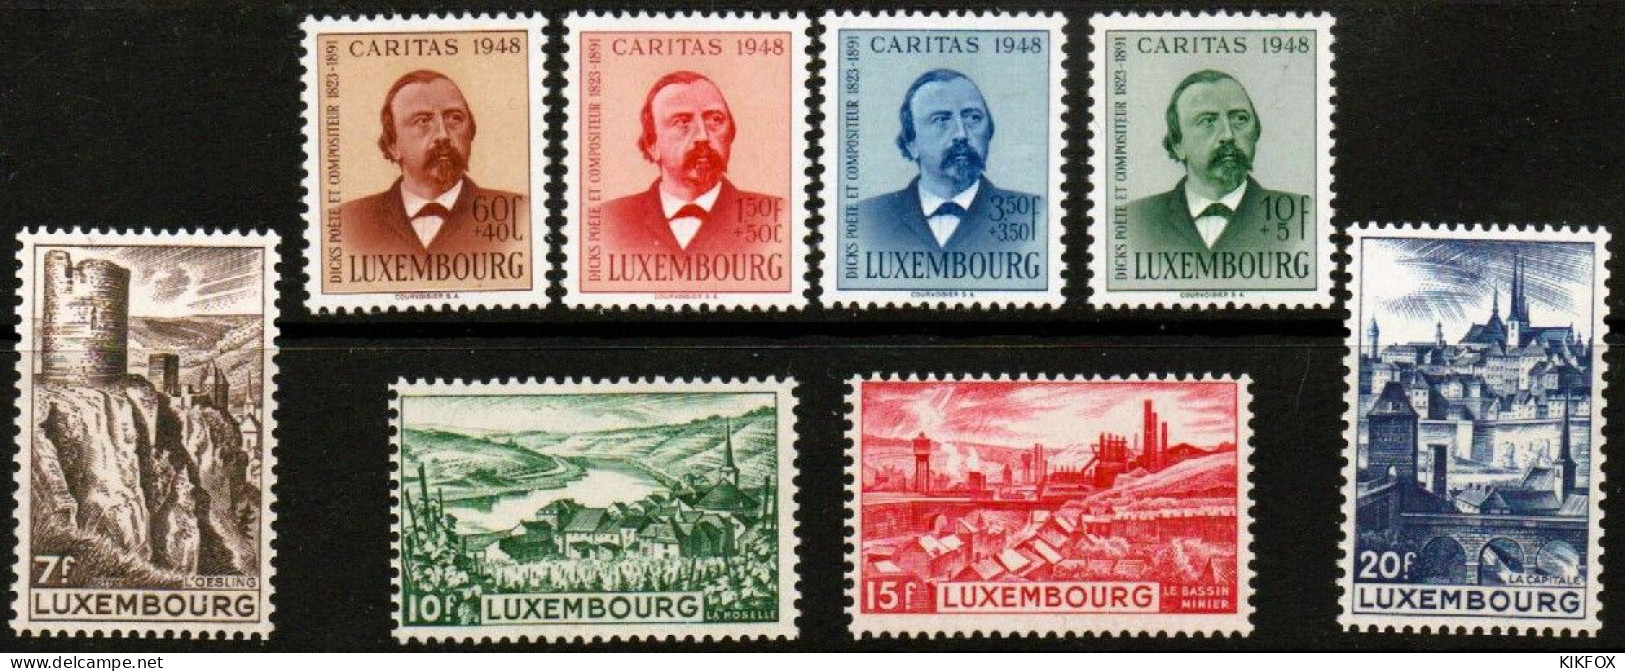 Luxembourg ,Luxemburg 1948,KOMPLETT, YV 406 - 413, Mi 431 - 438, Complete Year , NEUF/CHARNIERES ,POSTFRISCH/UNGEBRAUCHT - Ganze Jahrgänge